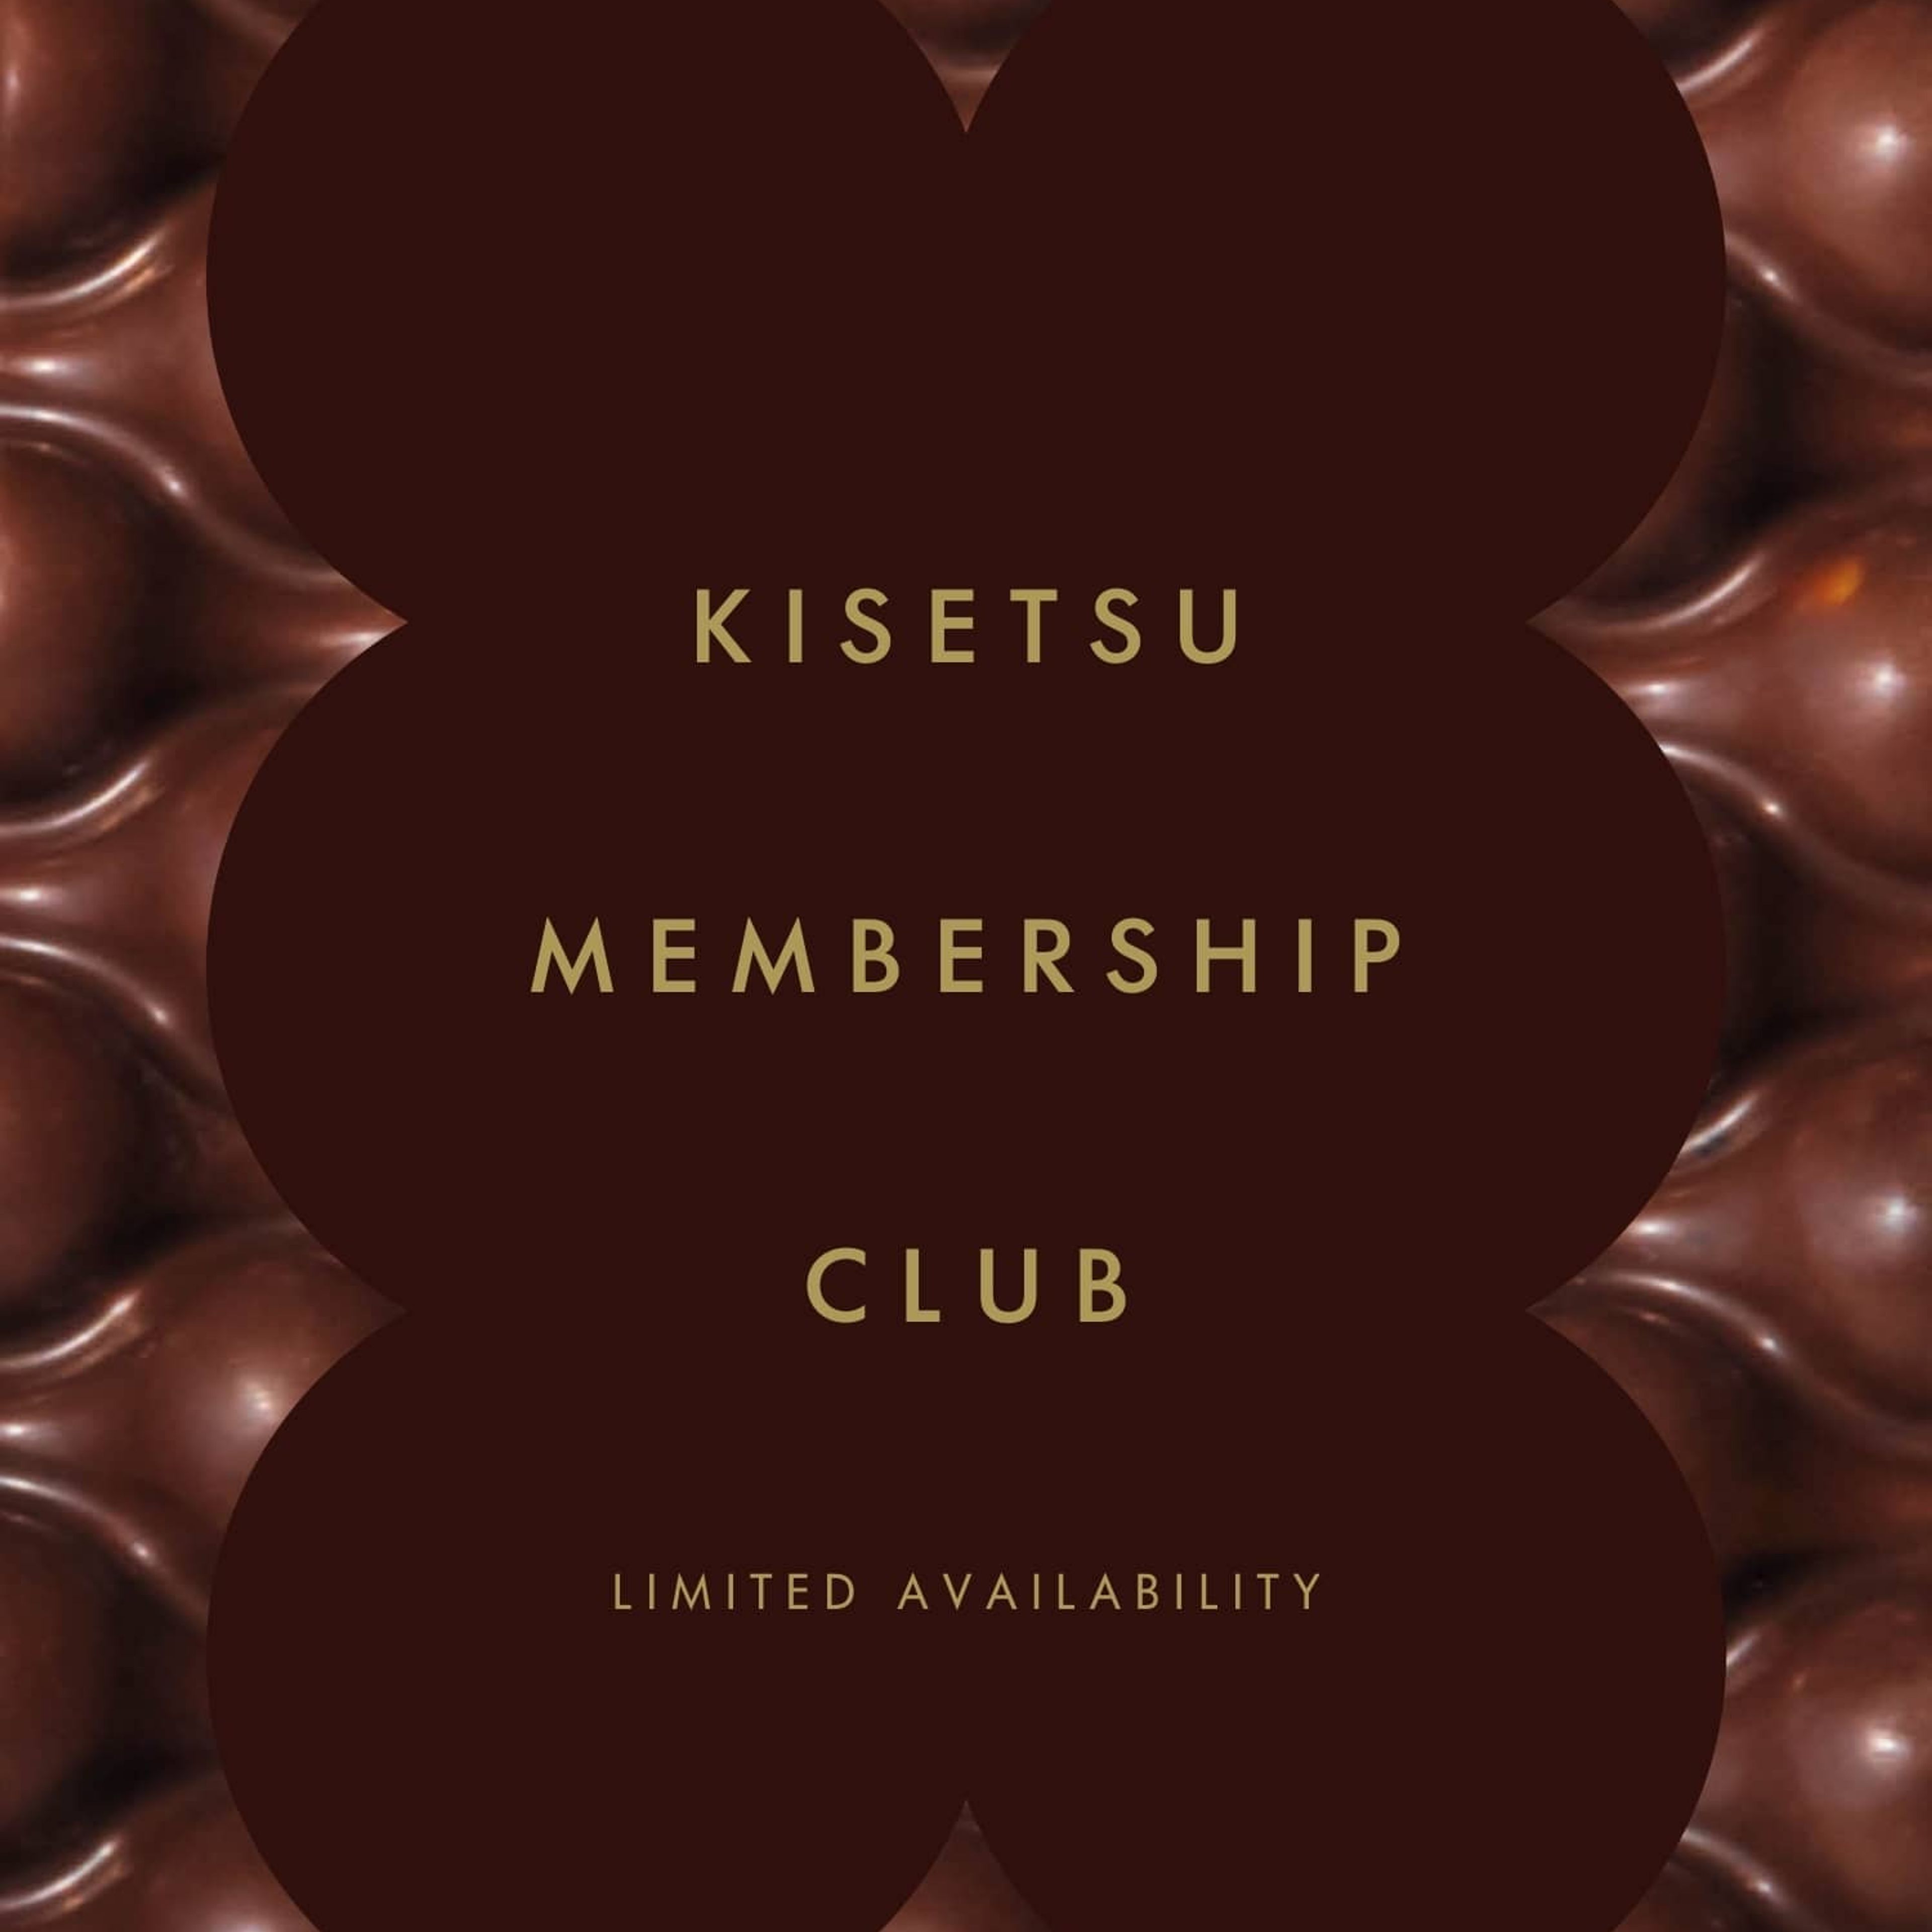 Kisetsu Membership Club